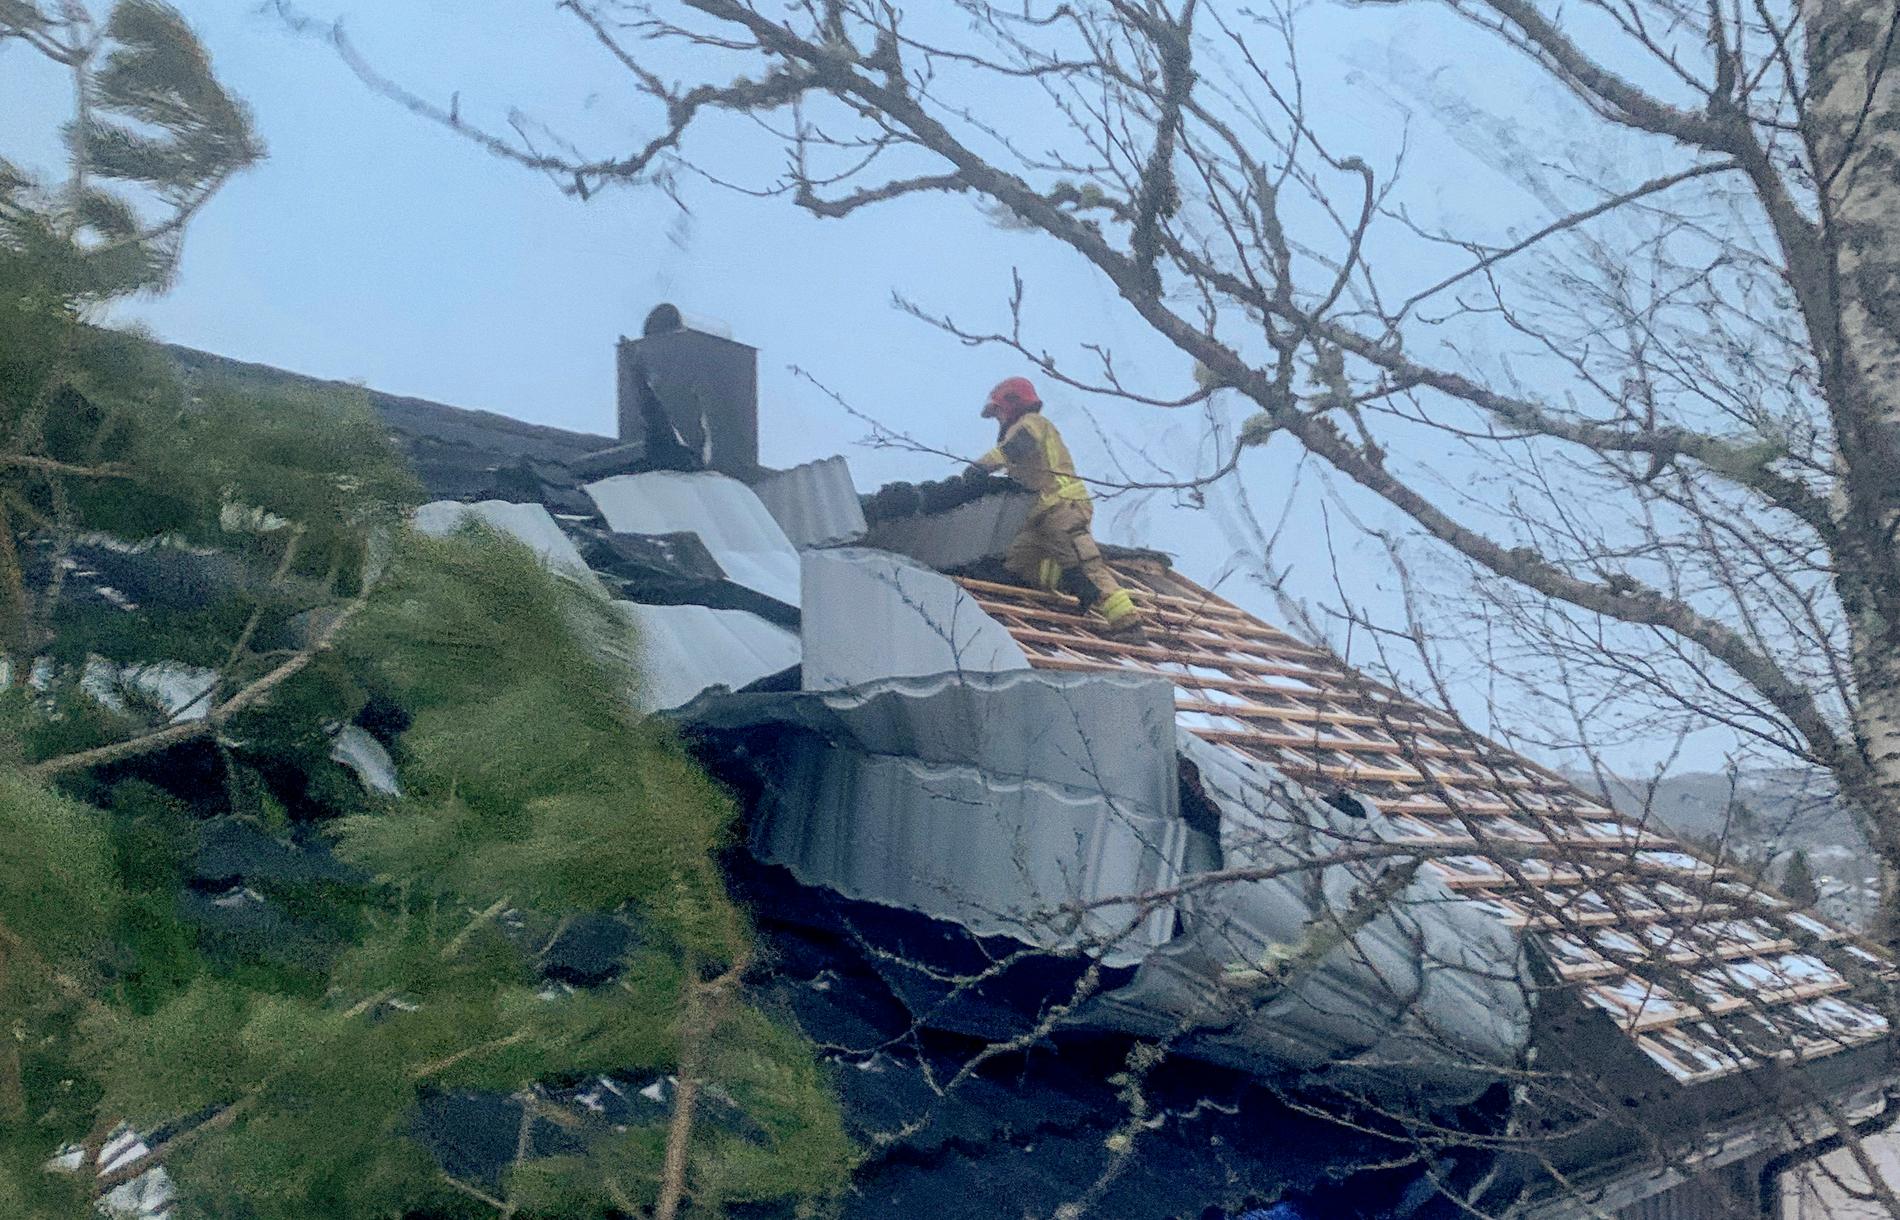 Mannskaper fra brann- og redningsetaten i Namsos måtte sikre taket på et hus i Ramsvikskogen der takplater løsnet i den sterke vinden.
Foto: Namsos brannvesen / NTB